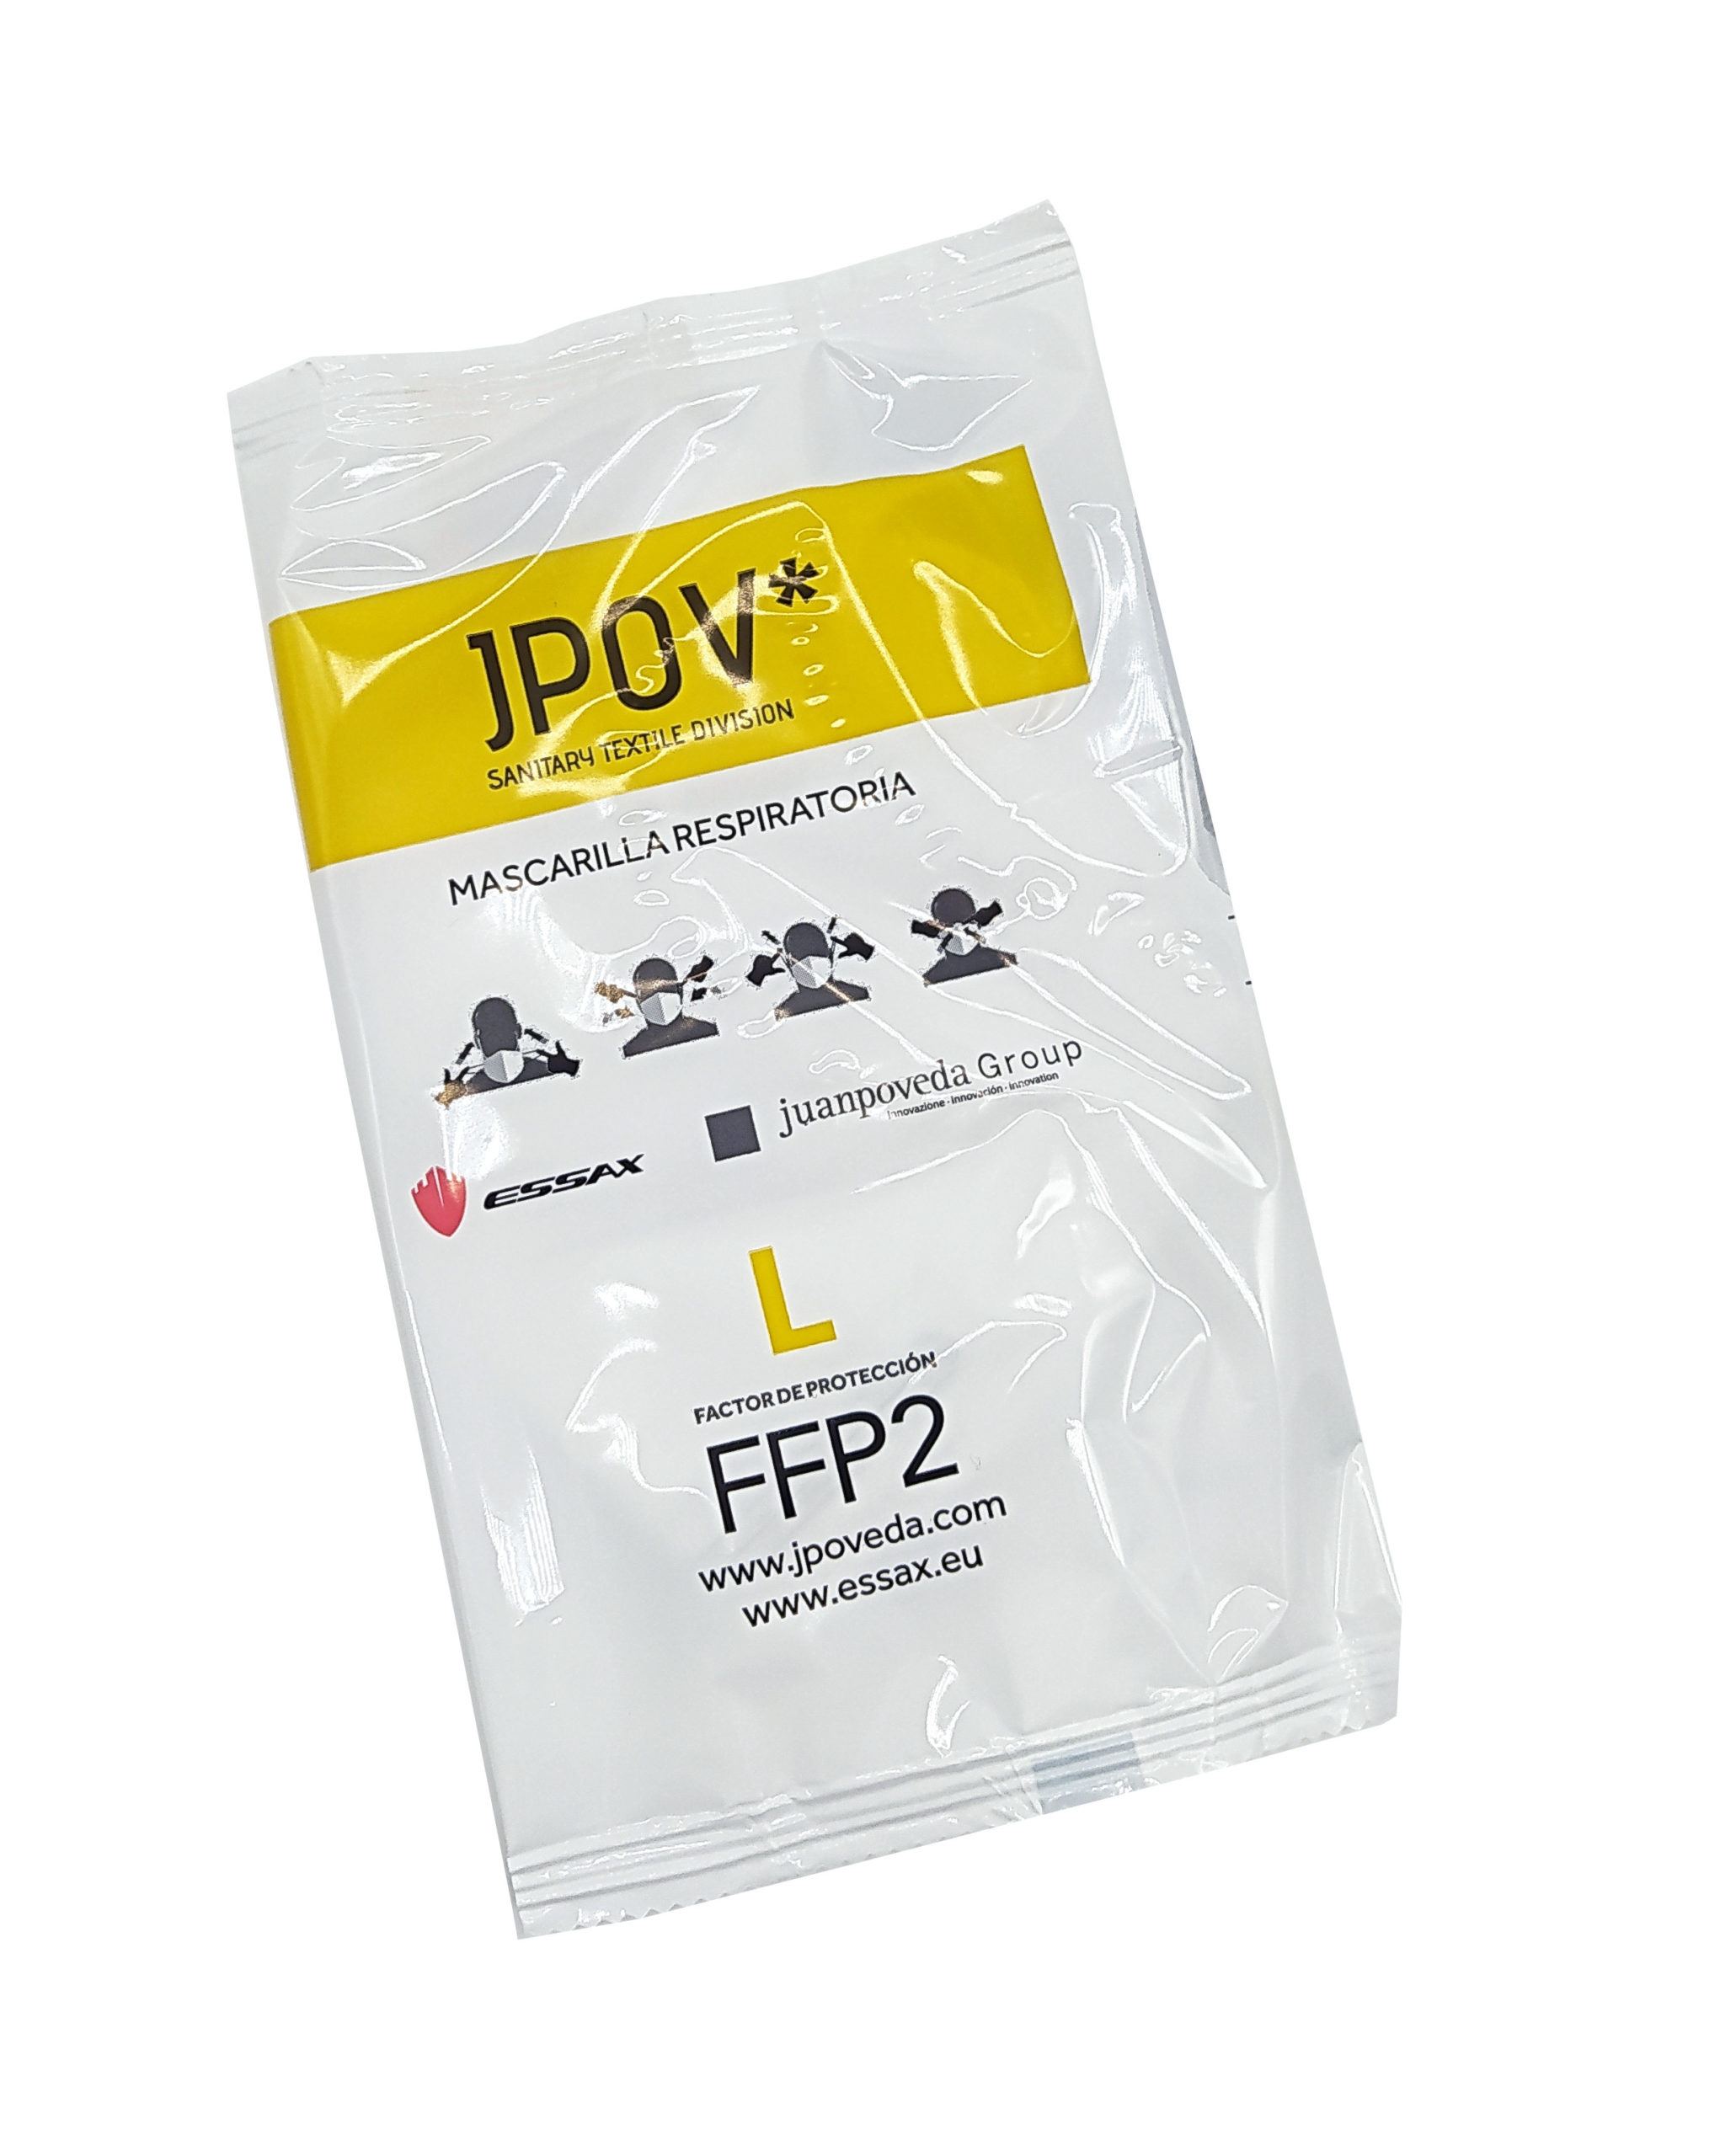 Mascarillas FFP2 homologadas fabricadas en España